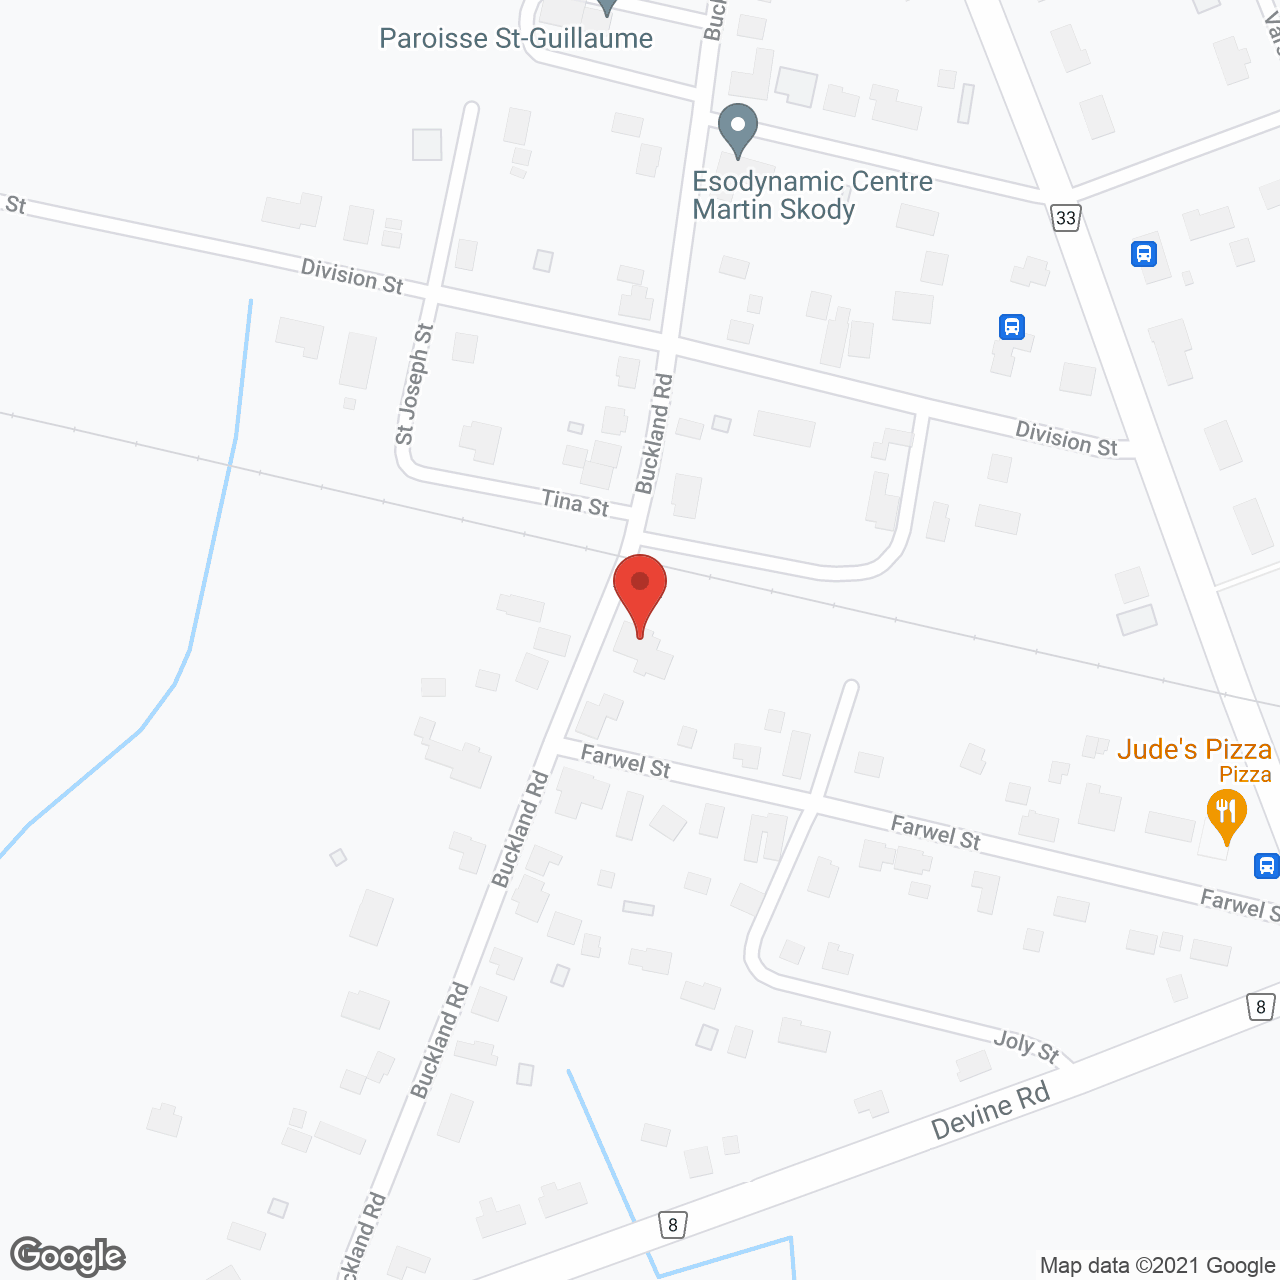 Residence St Francois in google map